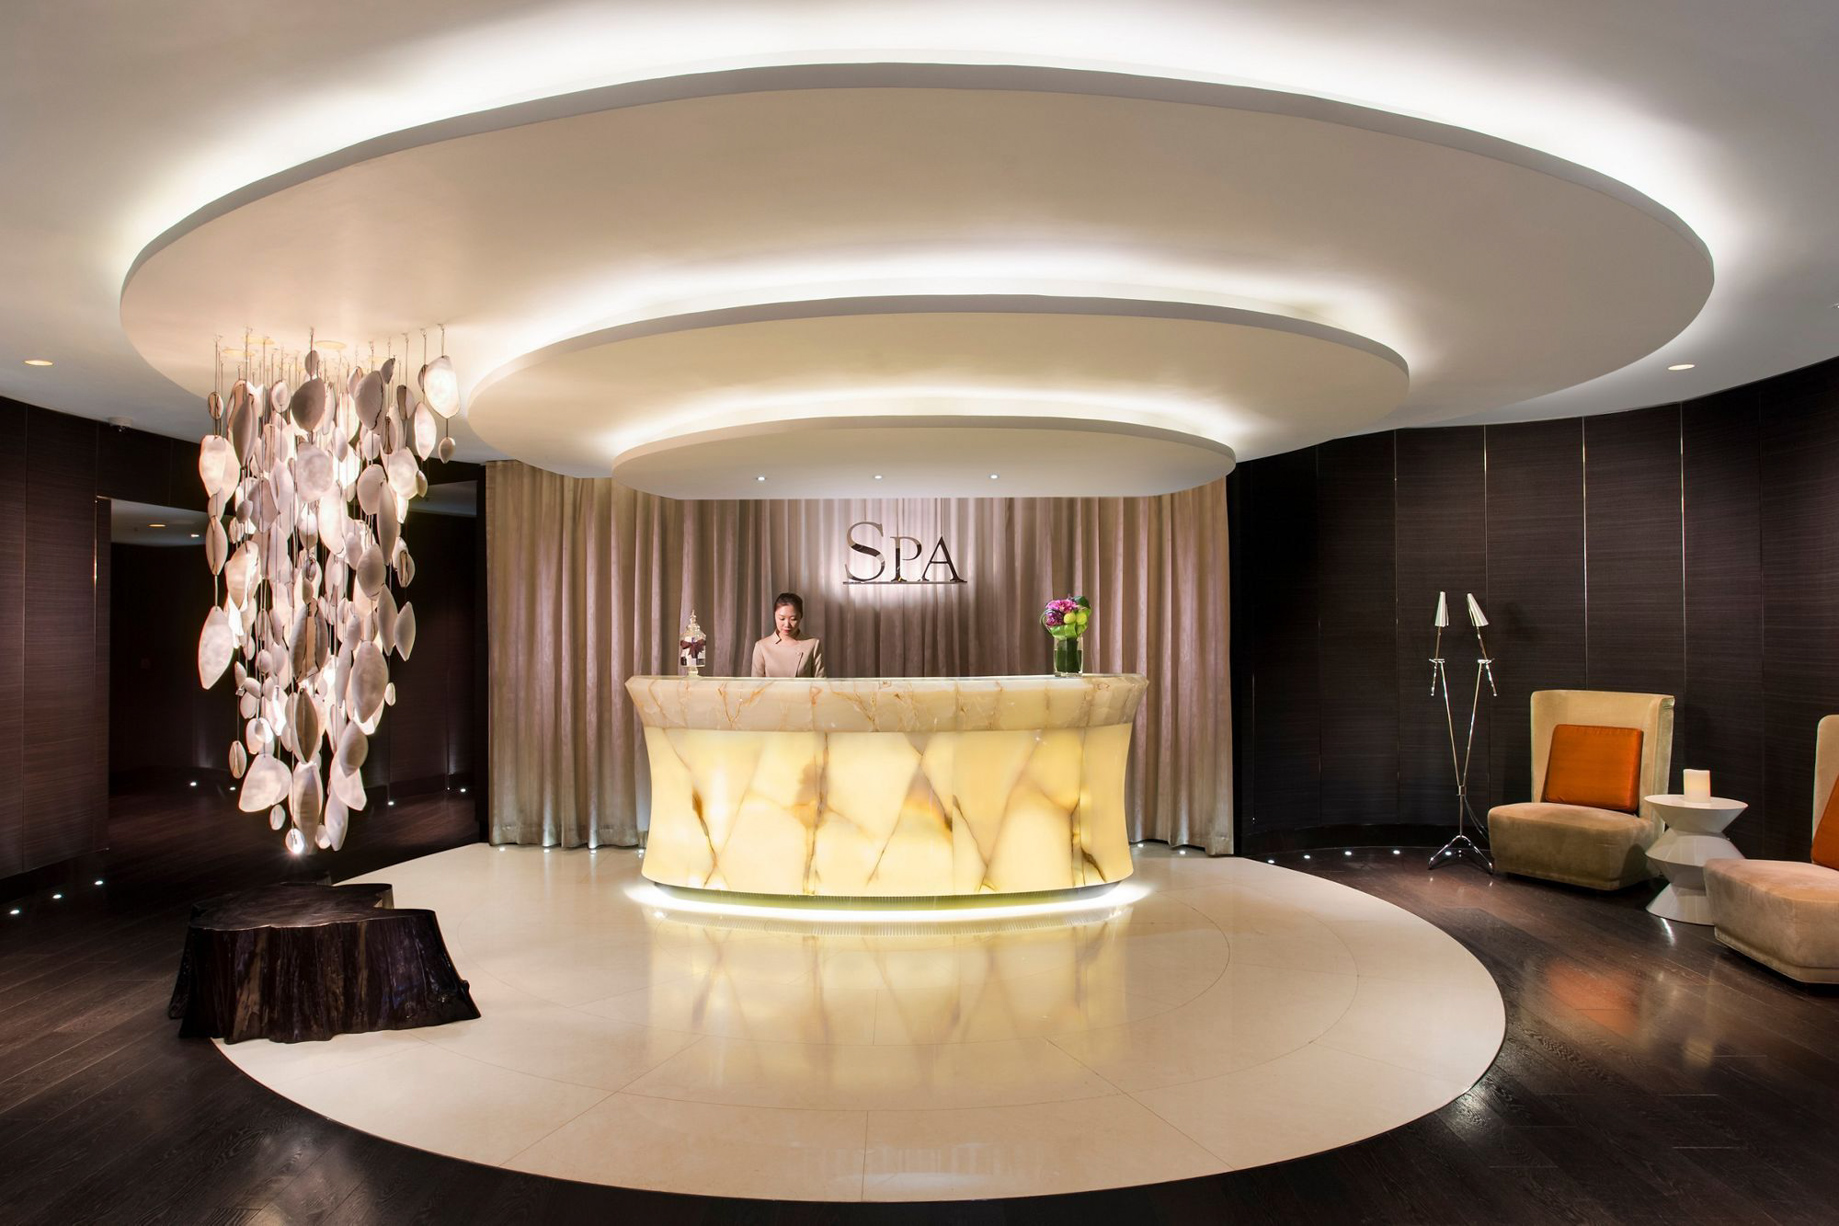 The Ritz-Carlton, Hong Kong Hotel – West Kowloon, Hong Kong – Spa Reception